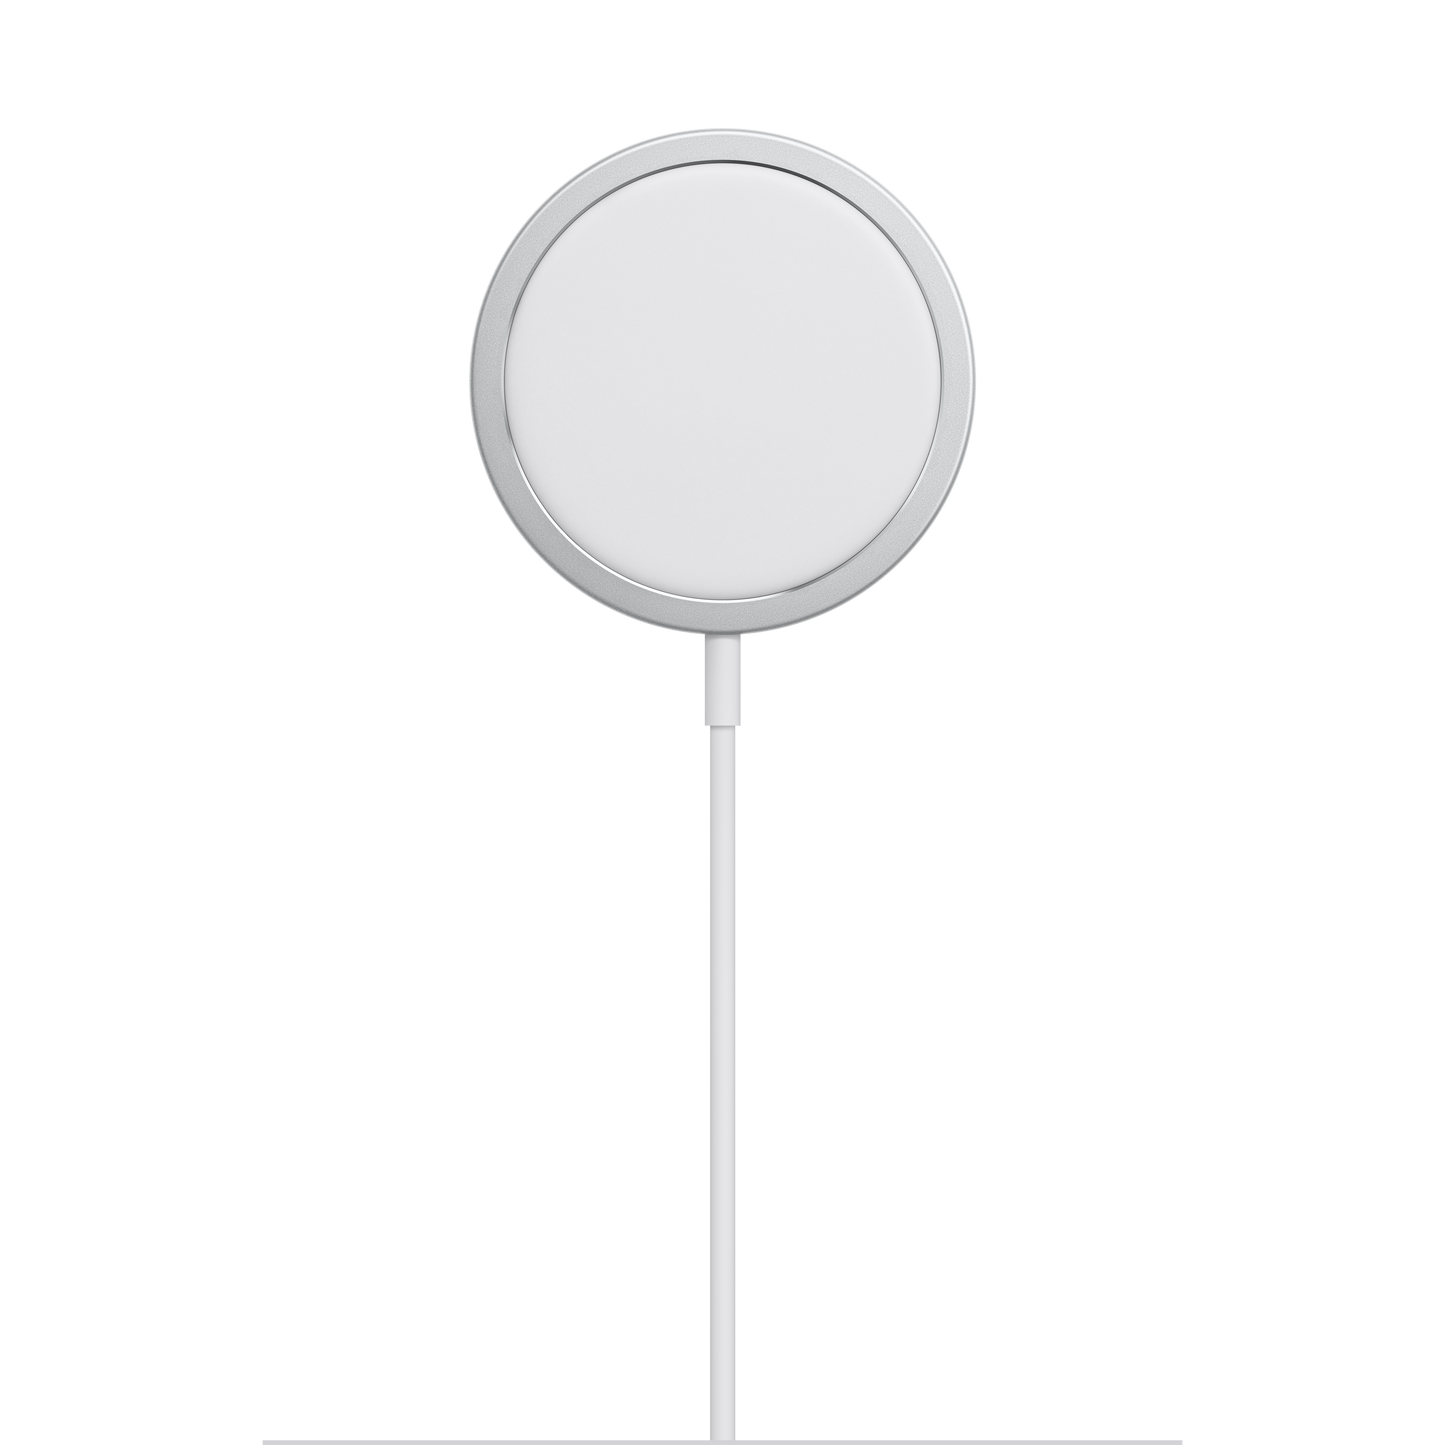 Cargador inalámbrico Apple MagSafe para iPhone - Blanco